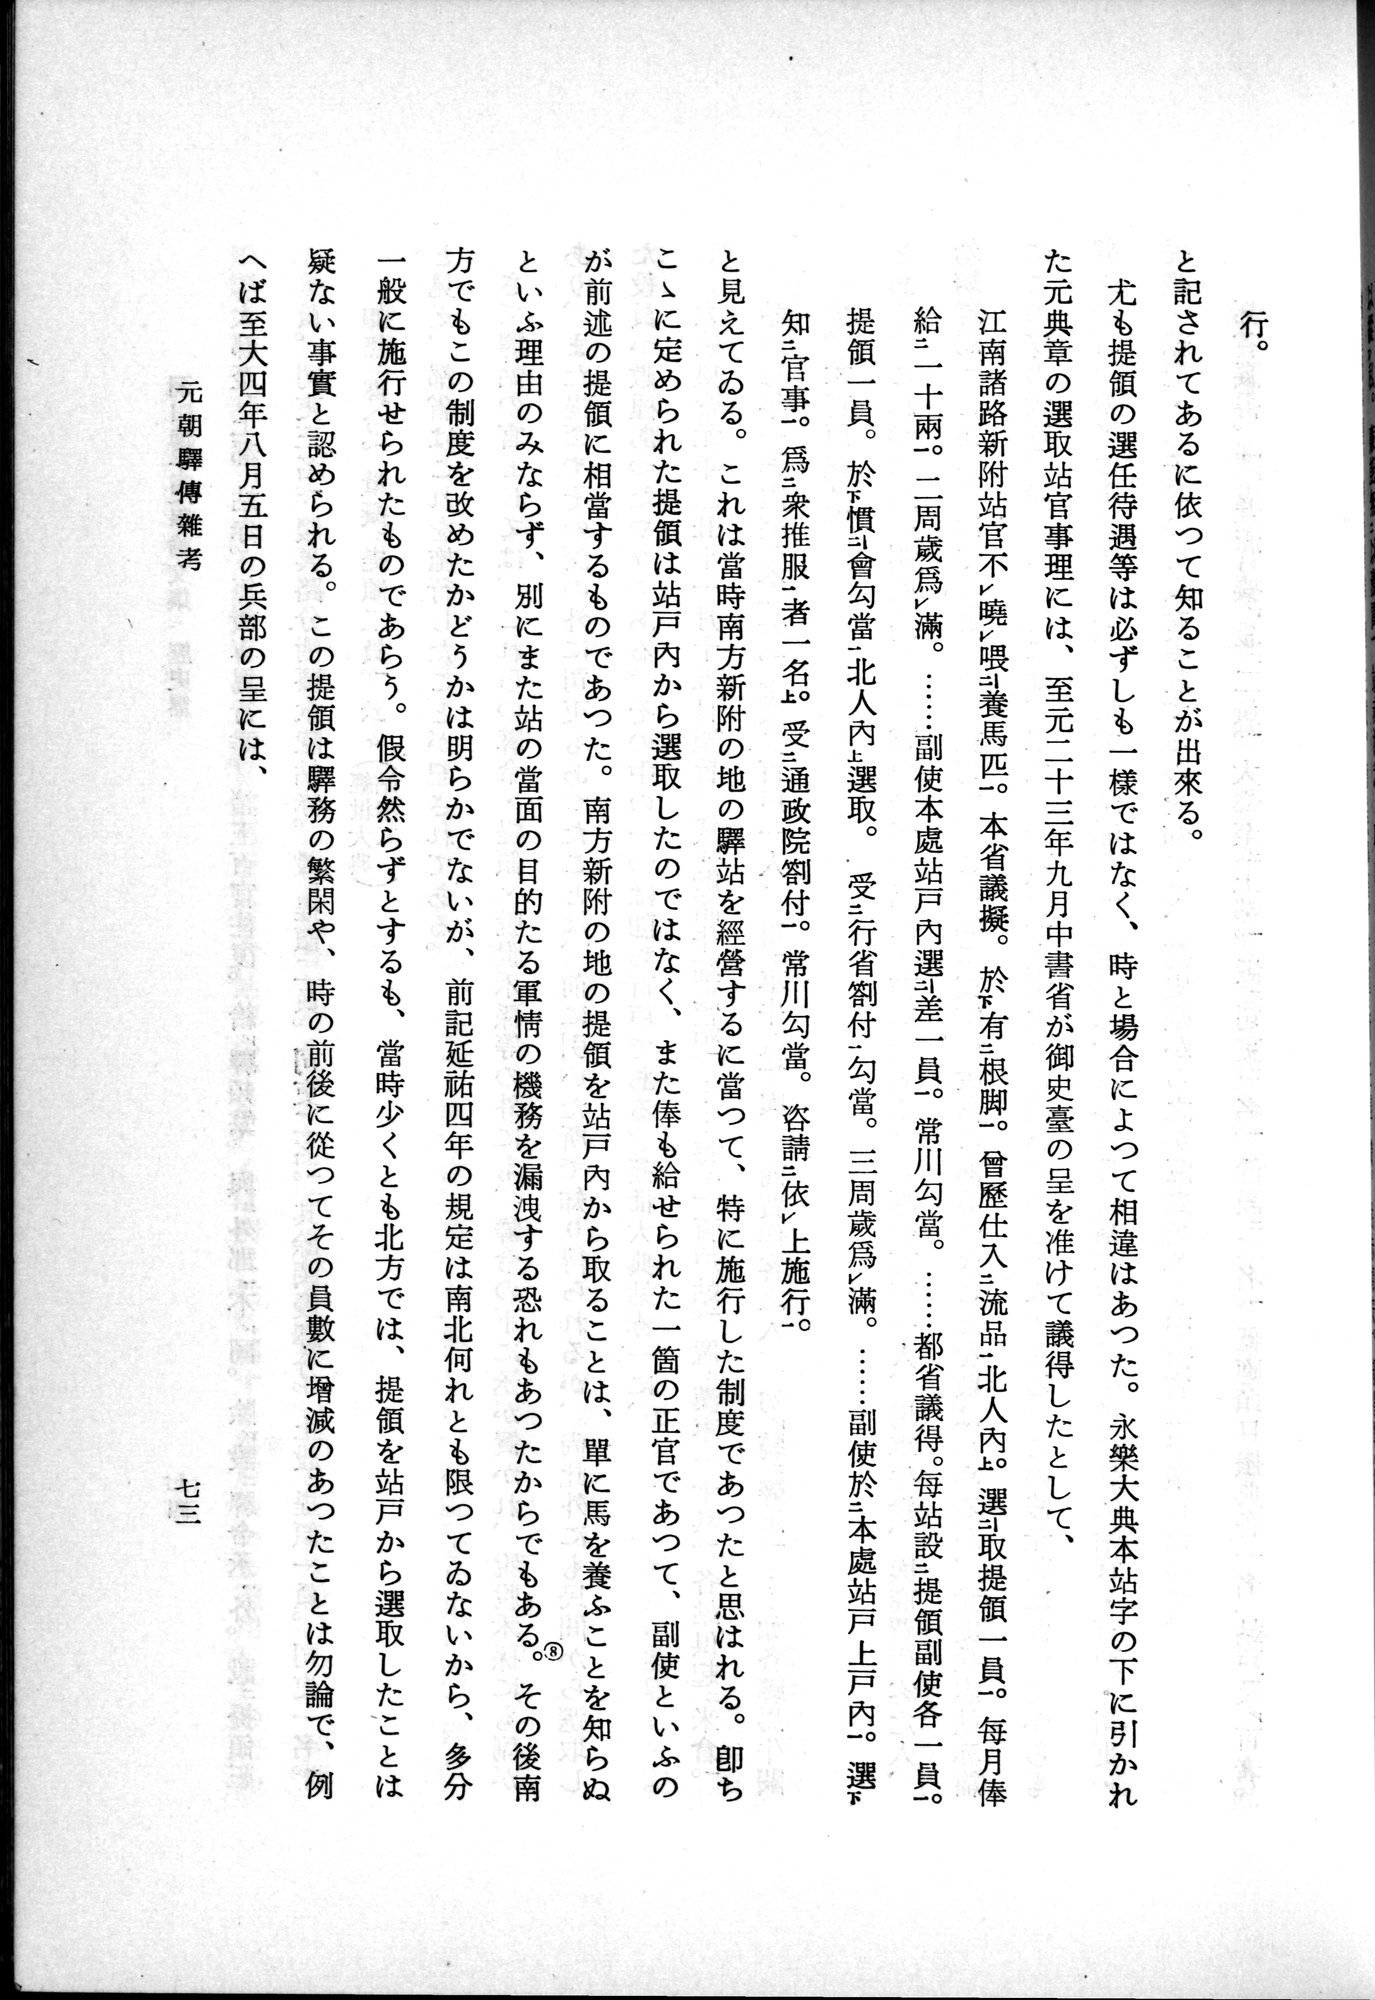 羽田博士史学論文集 : vol.1 / Page 111 (Grayscale High Resolution Image)